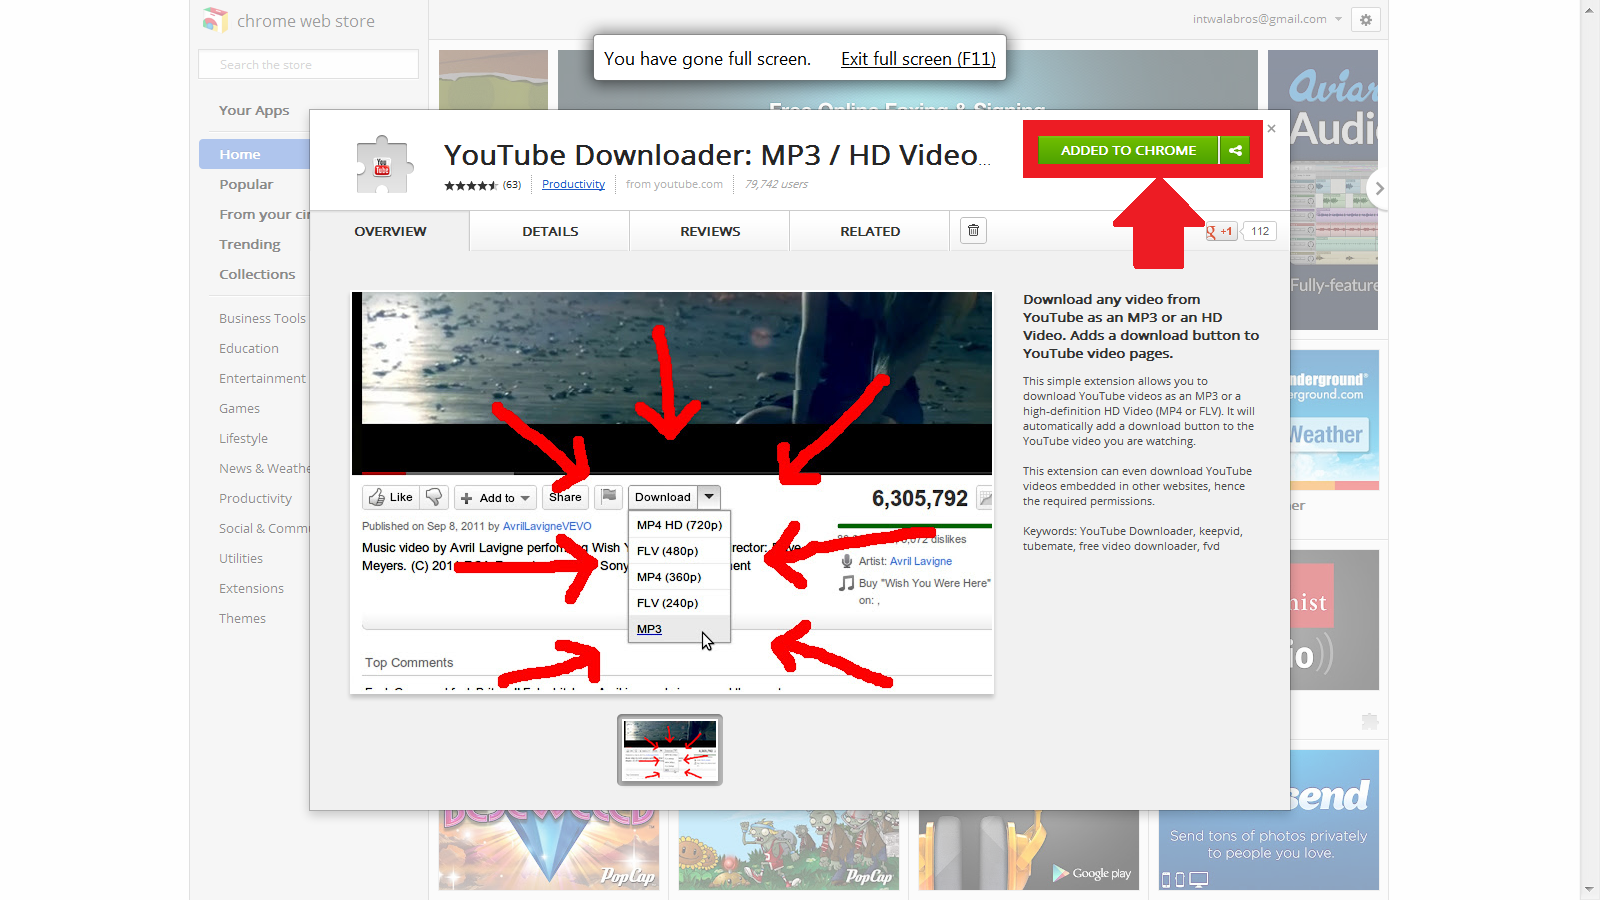 youtube downloader for safari mac 10.7